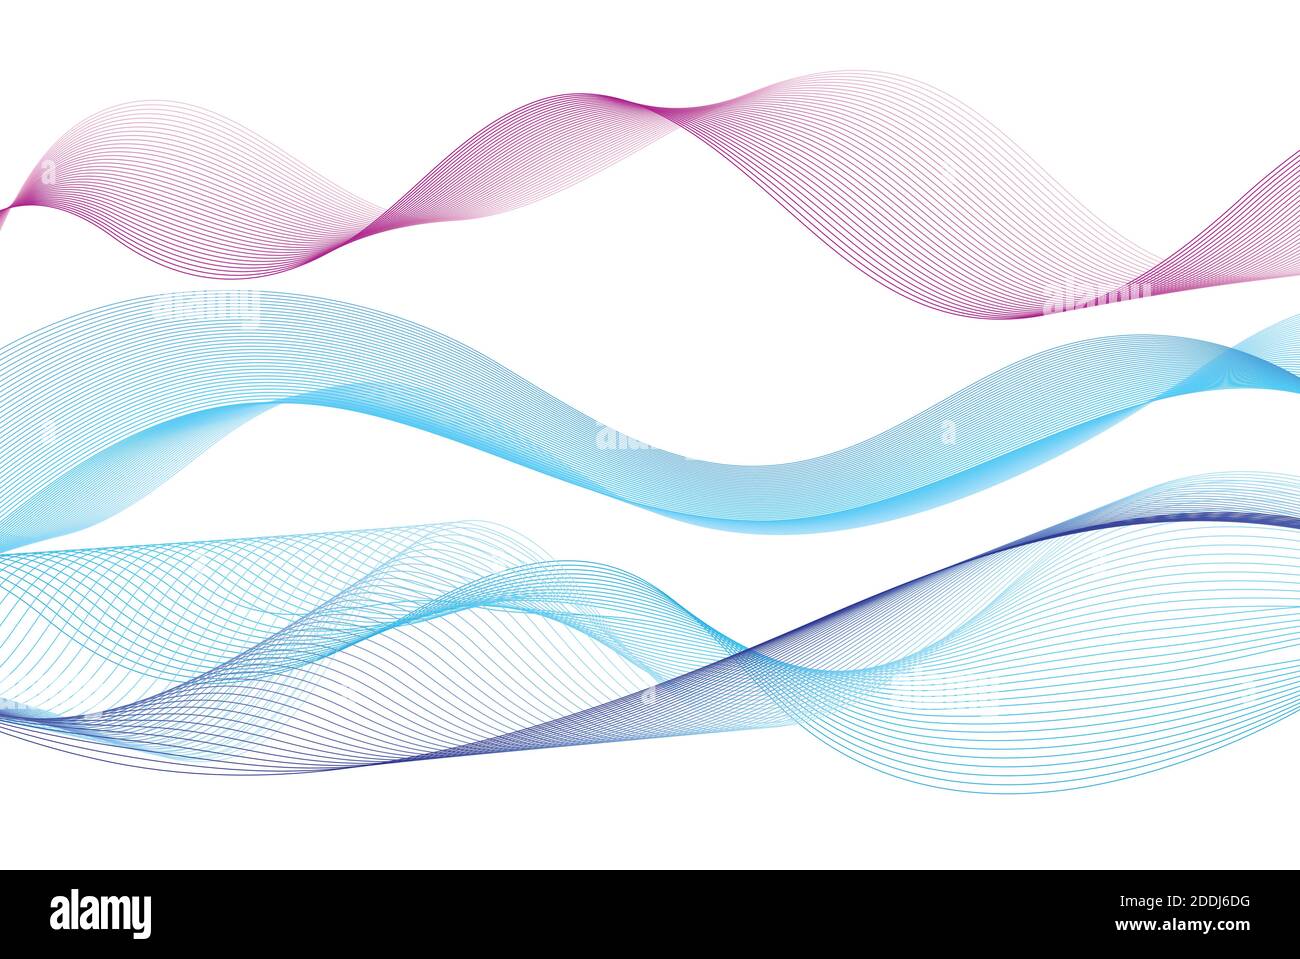 Immagine vivida delle linee d'onda blu su sfondo bianco. Esempio di progettazione di forme d'onda lineari Illustrazione Vettoriale